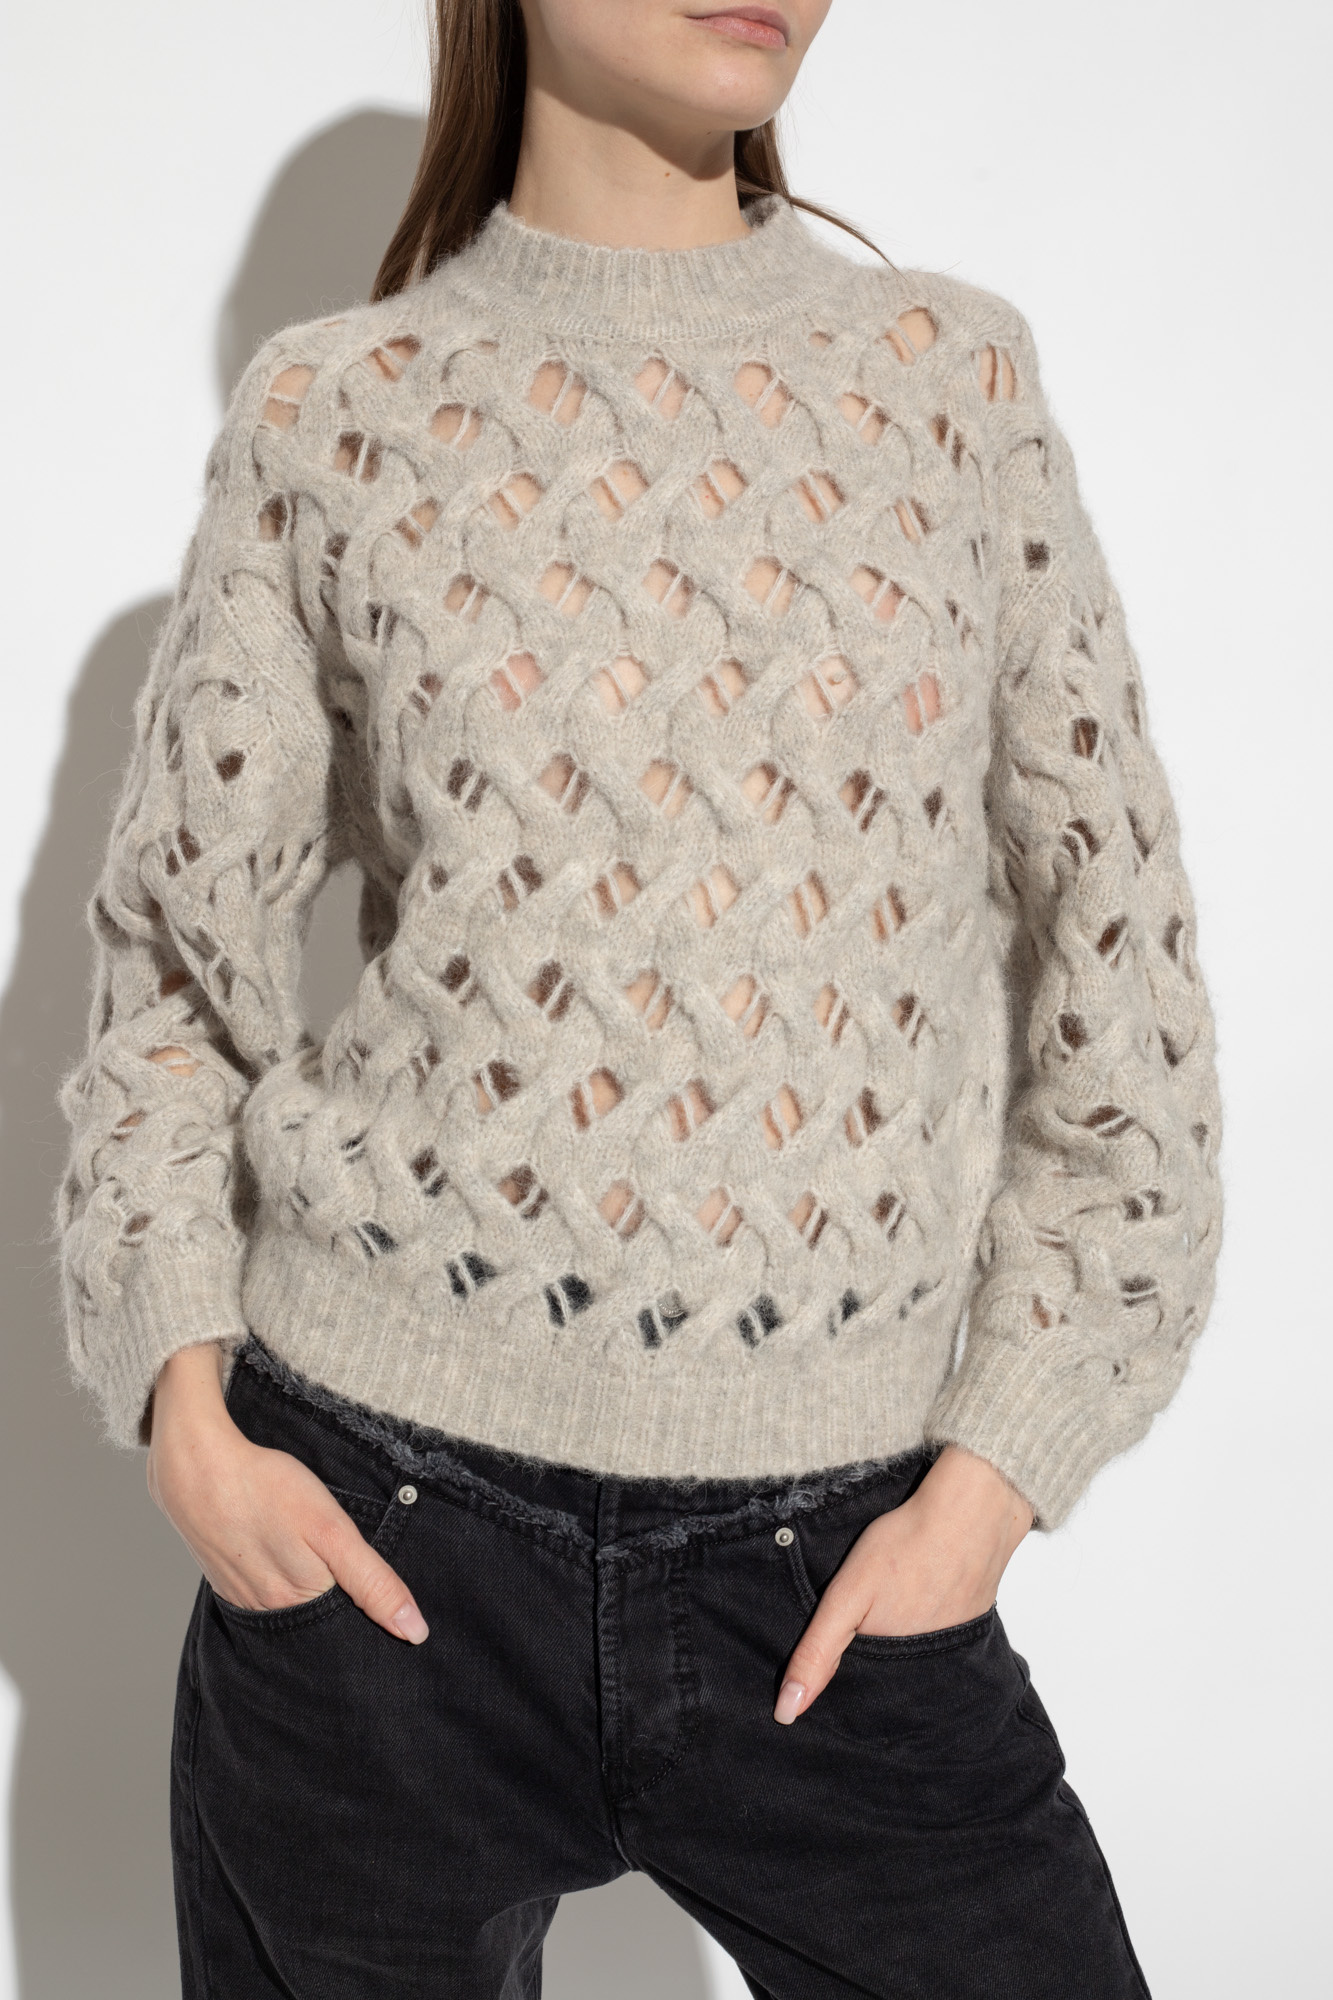 GenesinlifeShops WF - clothing mats storage T Shirts - Grey 'Aurelia'  sweater Marant Etoile